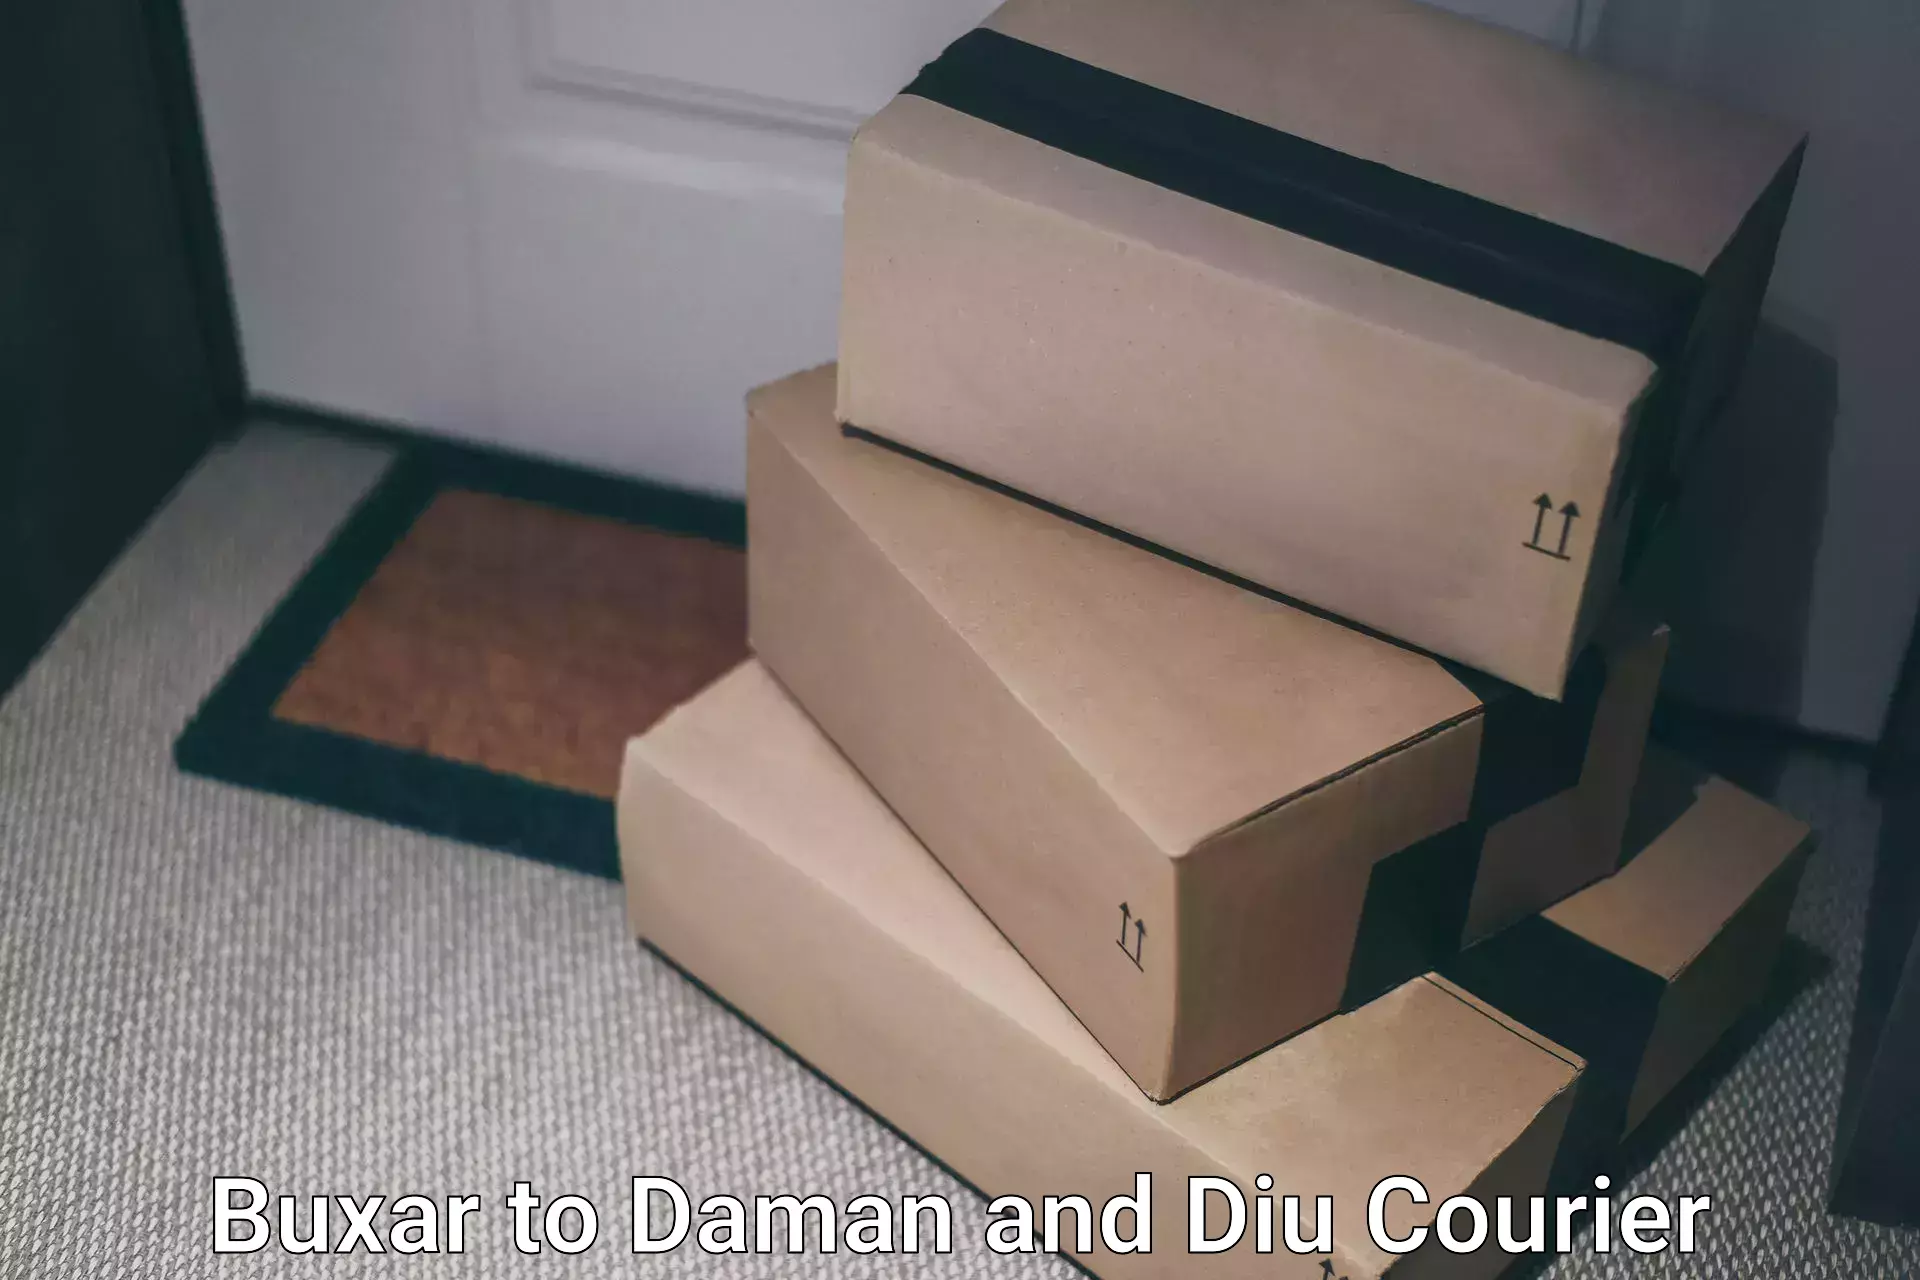 Cargo courier service Buxar to Daman